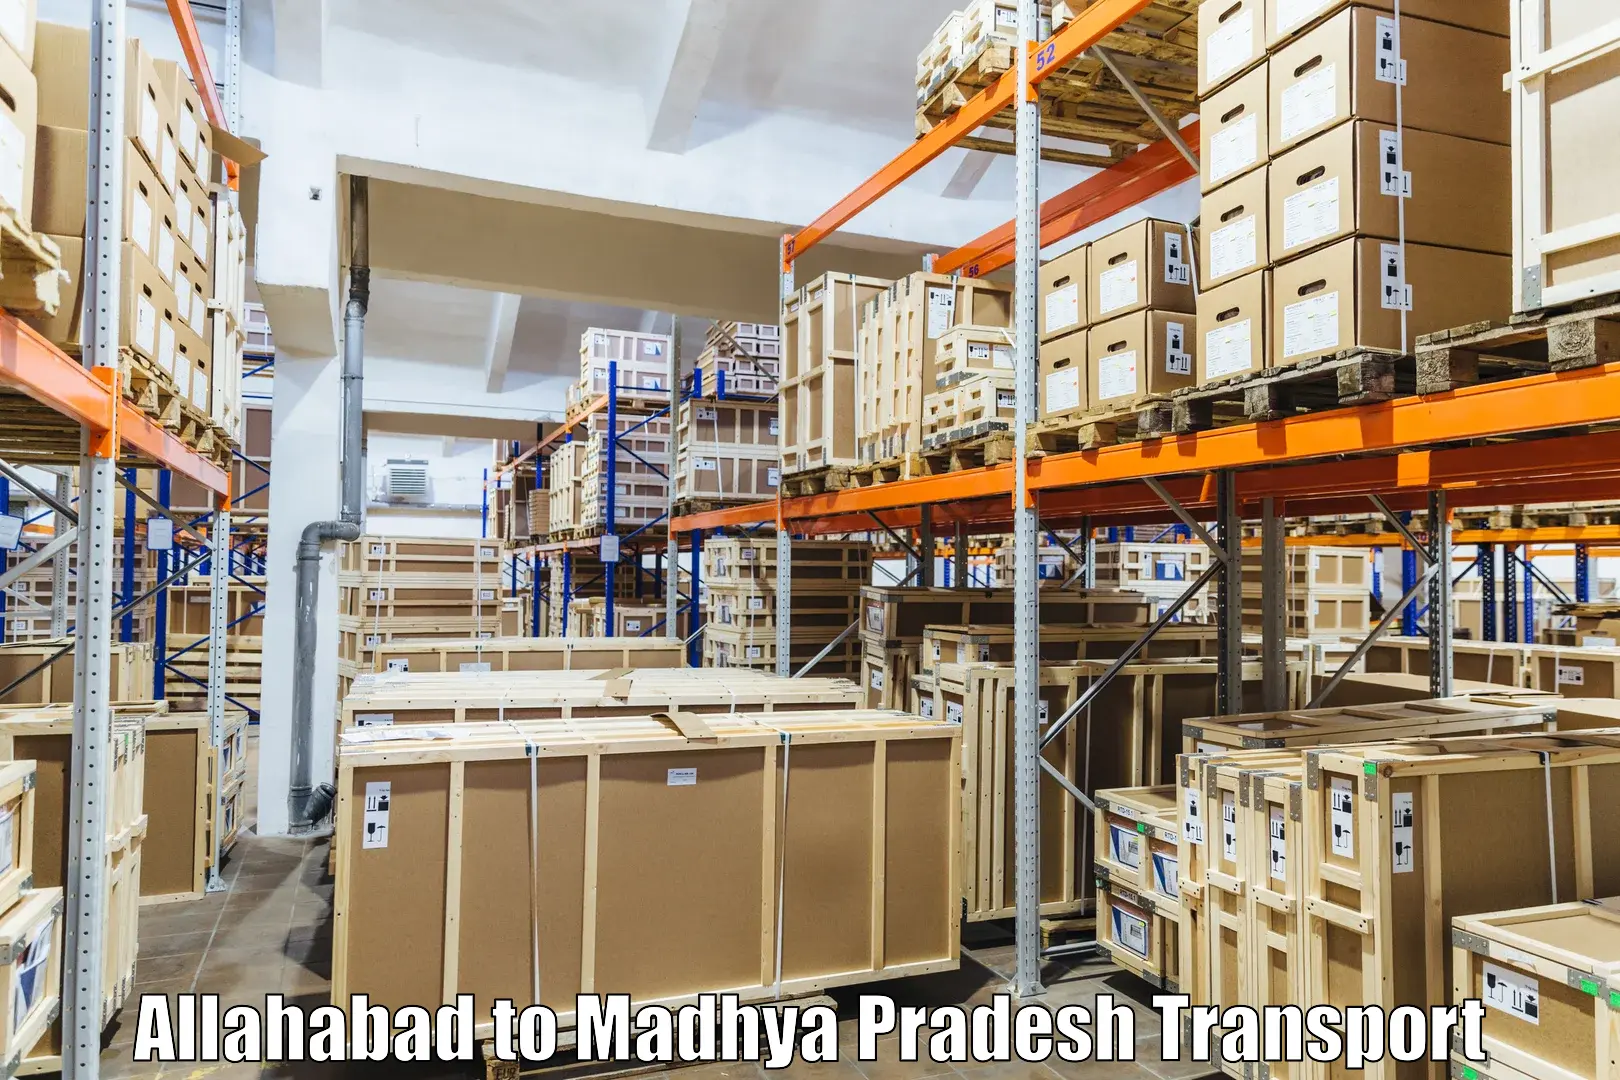 International cargo transportation services Allahabad to Begumganj